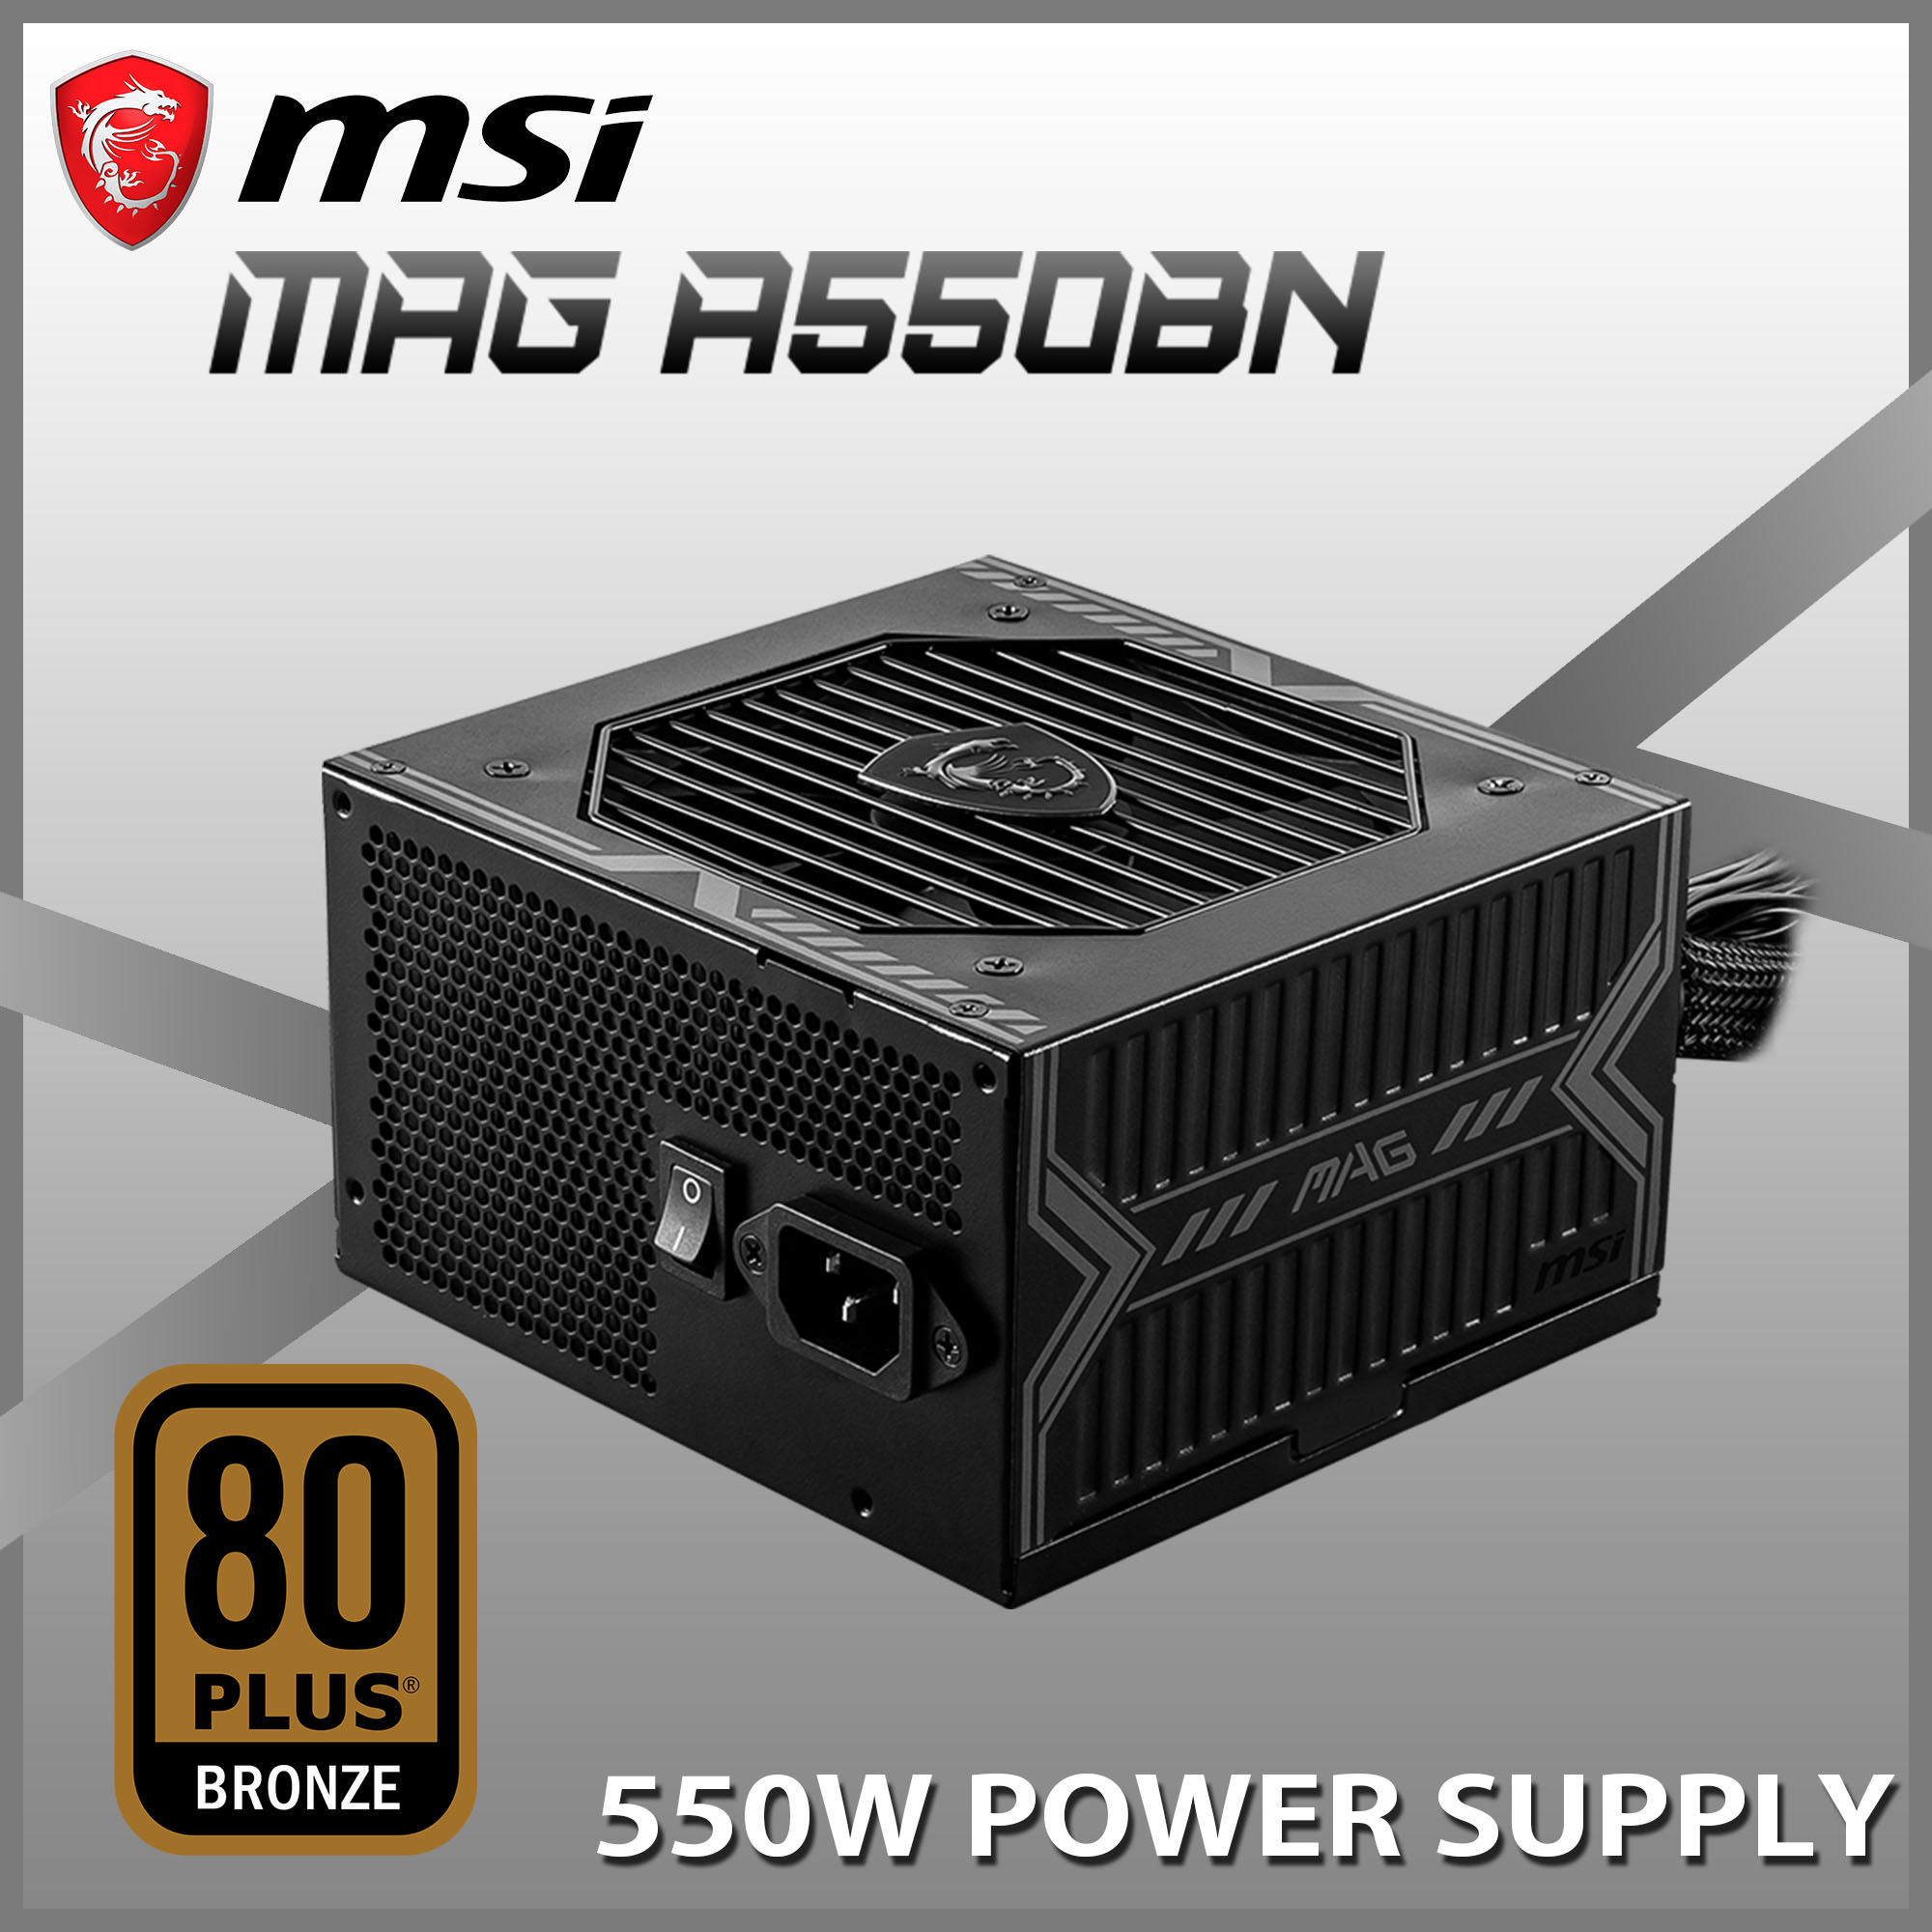 Захранващ блок 550W (MSI MAG A550BN)